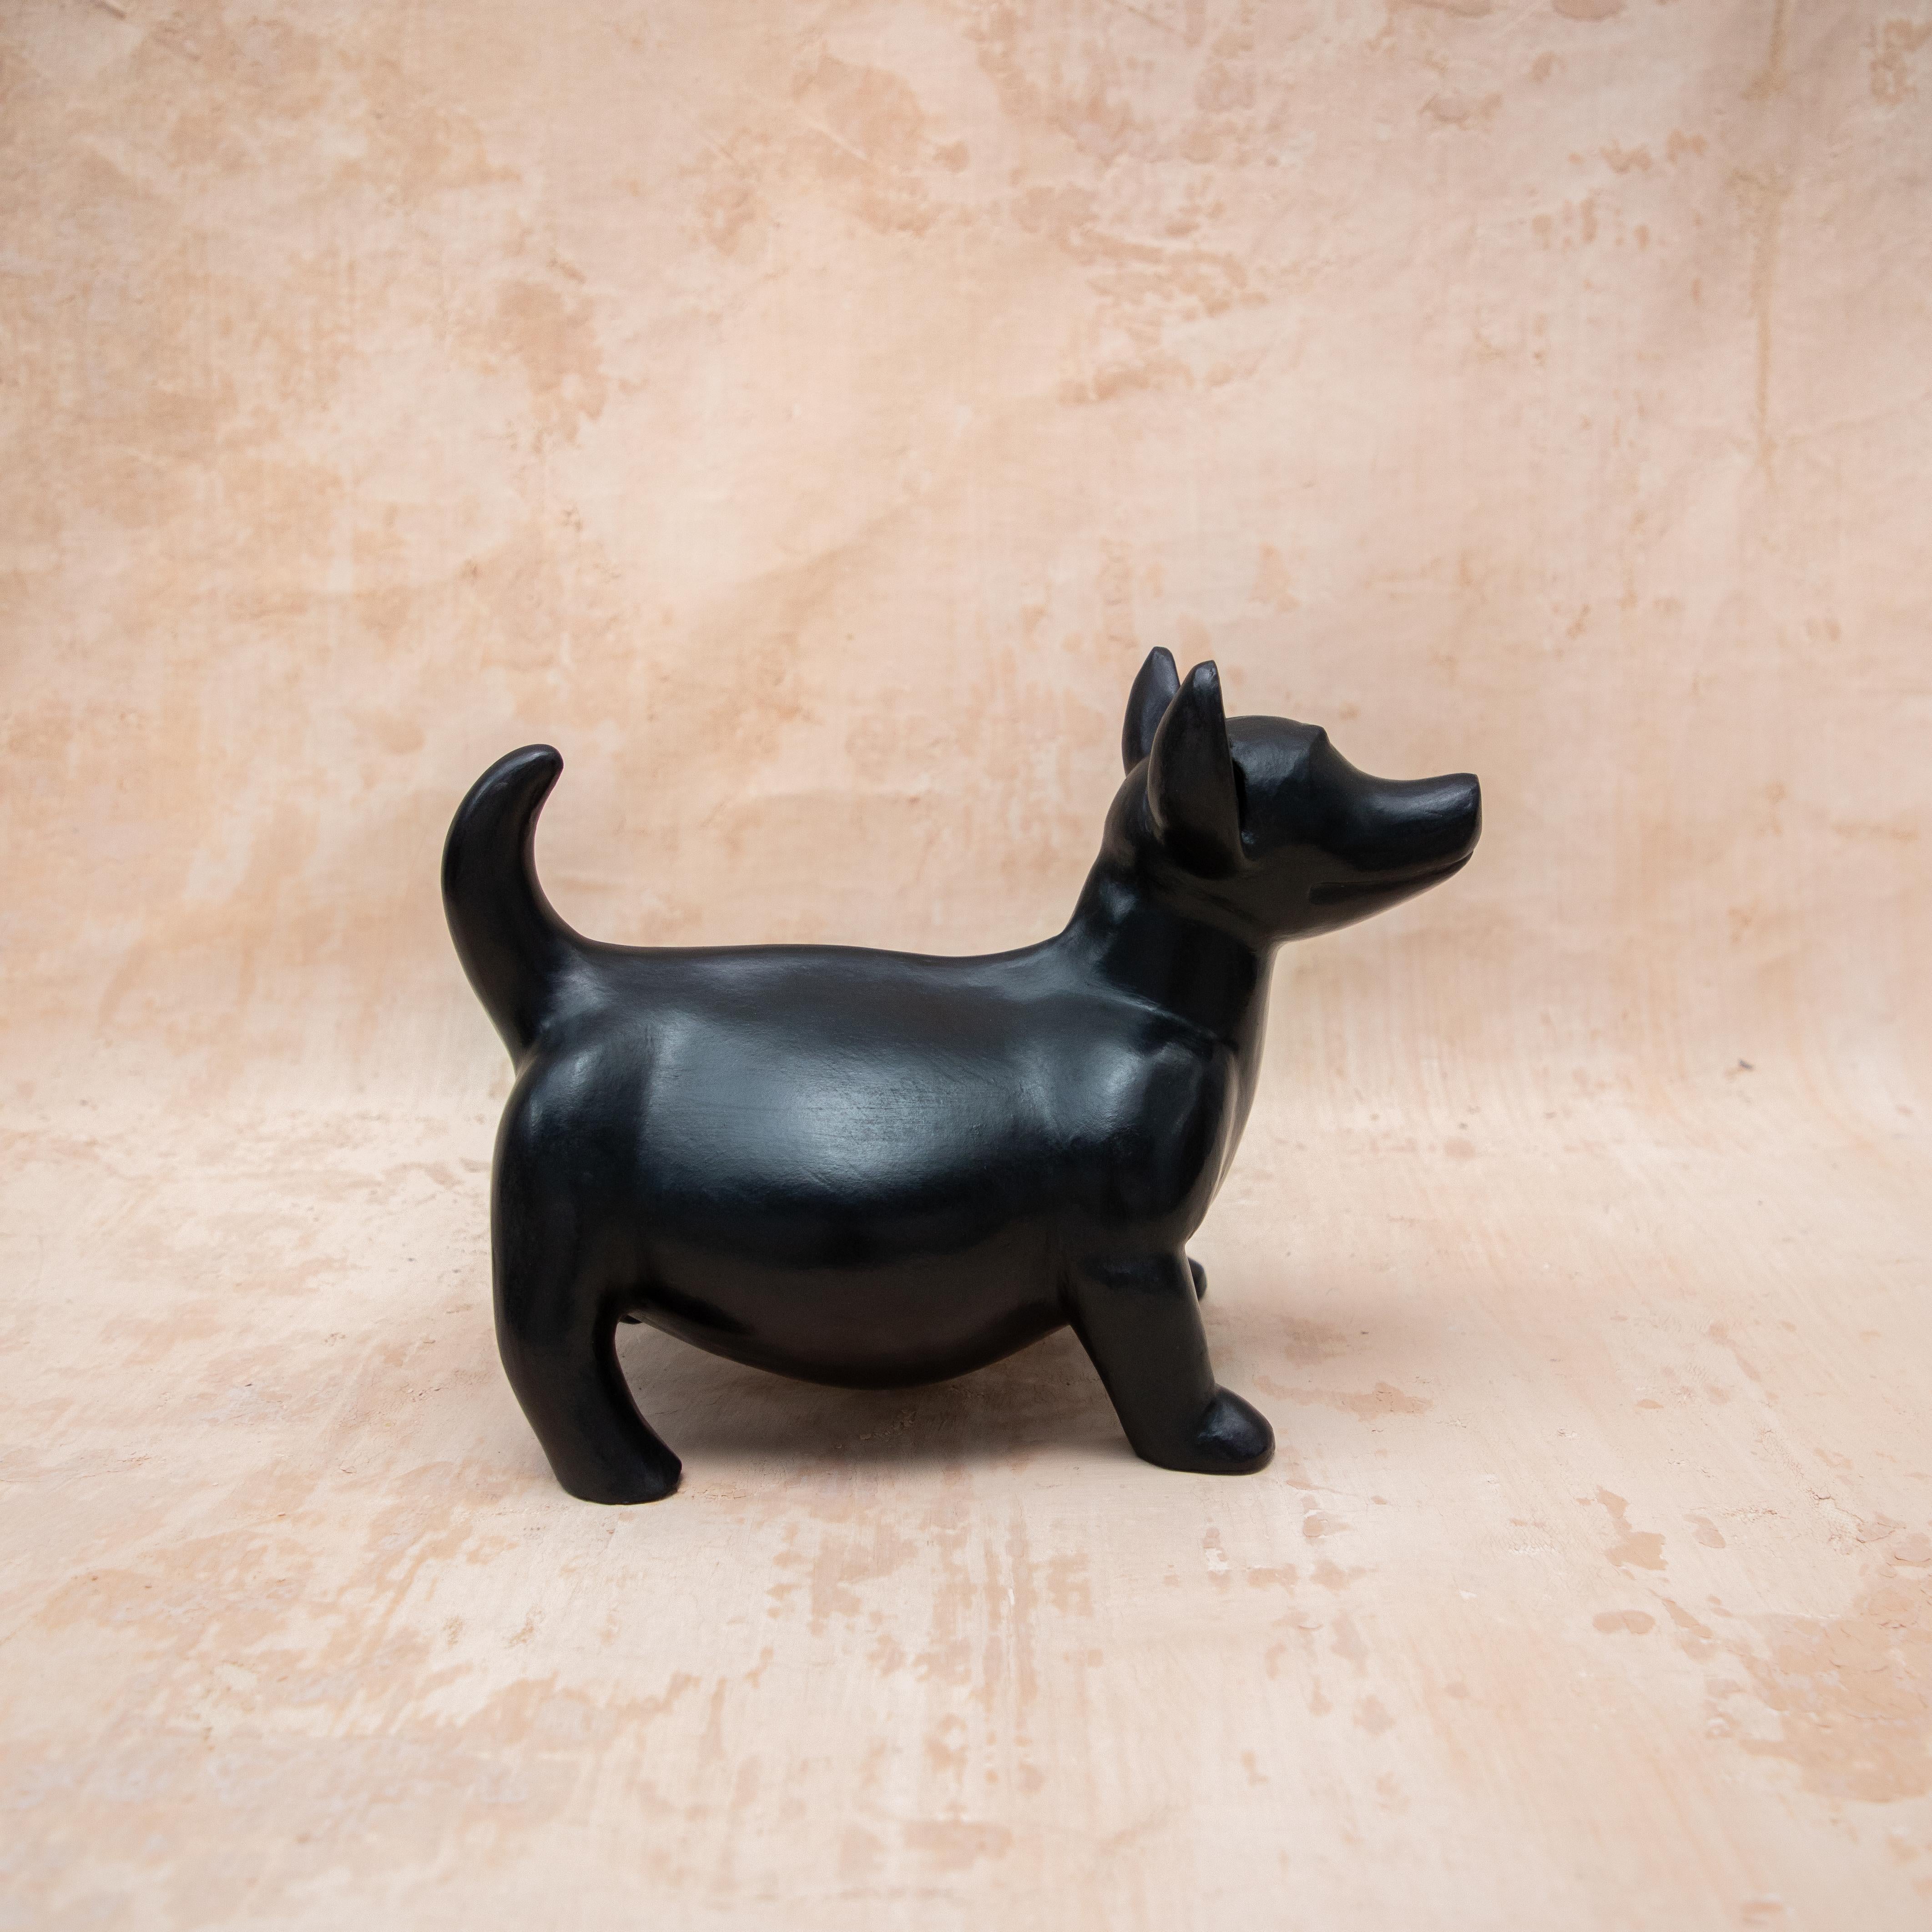 Stehender Xolo von Onora
Abmessungen: B 33,7 x H 25 cm
MATERIALIEN: Lehm

Xolo, kurz für Xoloitzcuintle, ist eine Hunderasse, die in Mexiko seit langem ein kulturell bedeutsames Symbol ist. Diese Hunde galten bei den Azteken und Mayas als